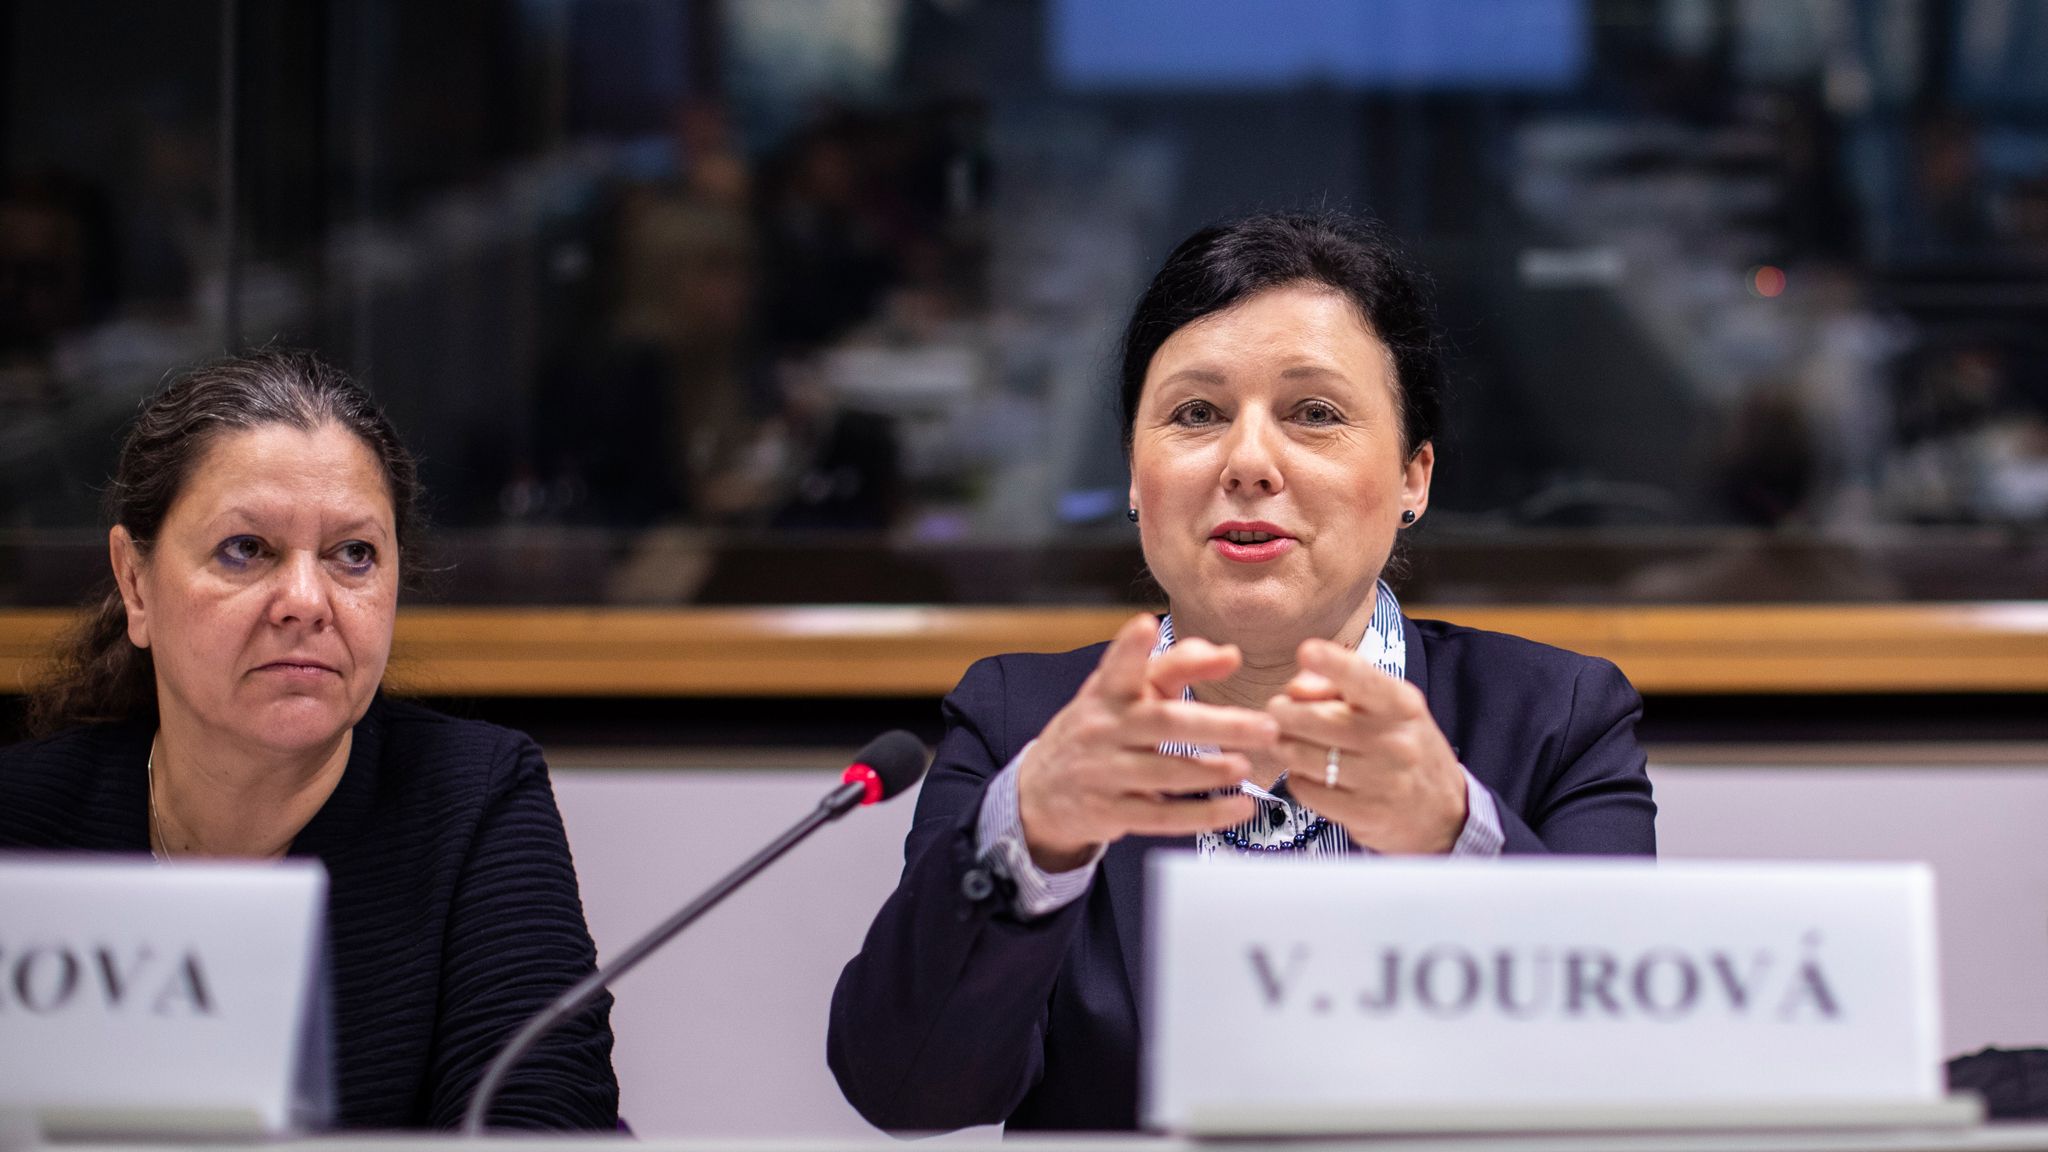 À Bruxelles, deux femmes tchèques ont obtenu de très bons résultats, atteignant toutes deux des postes de premier plan à la Commission européenne